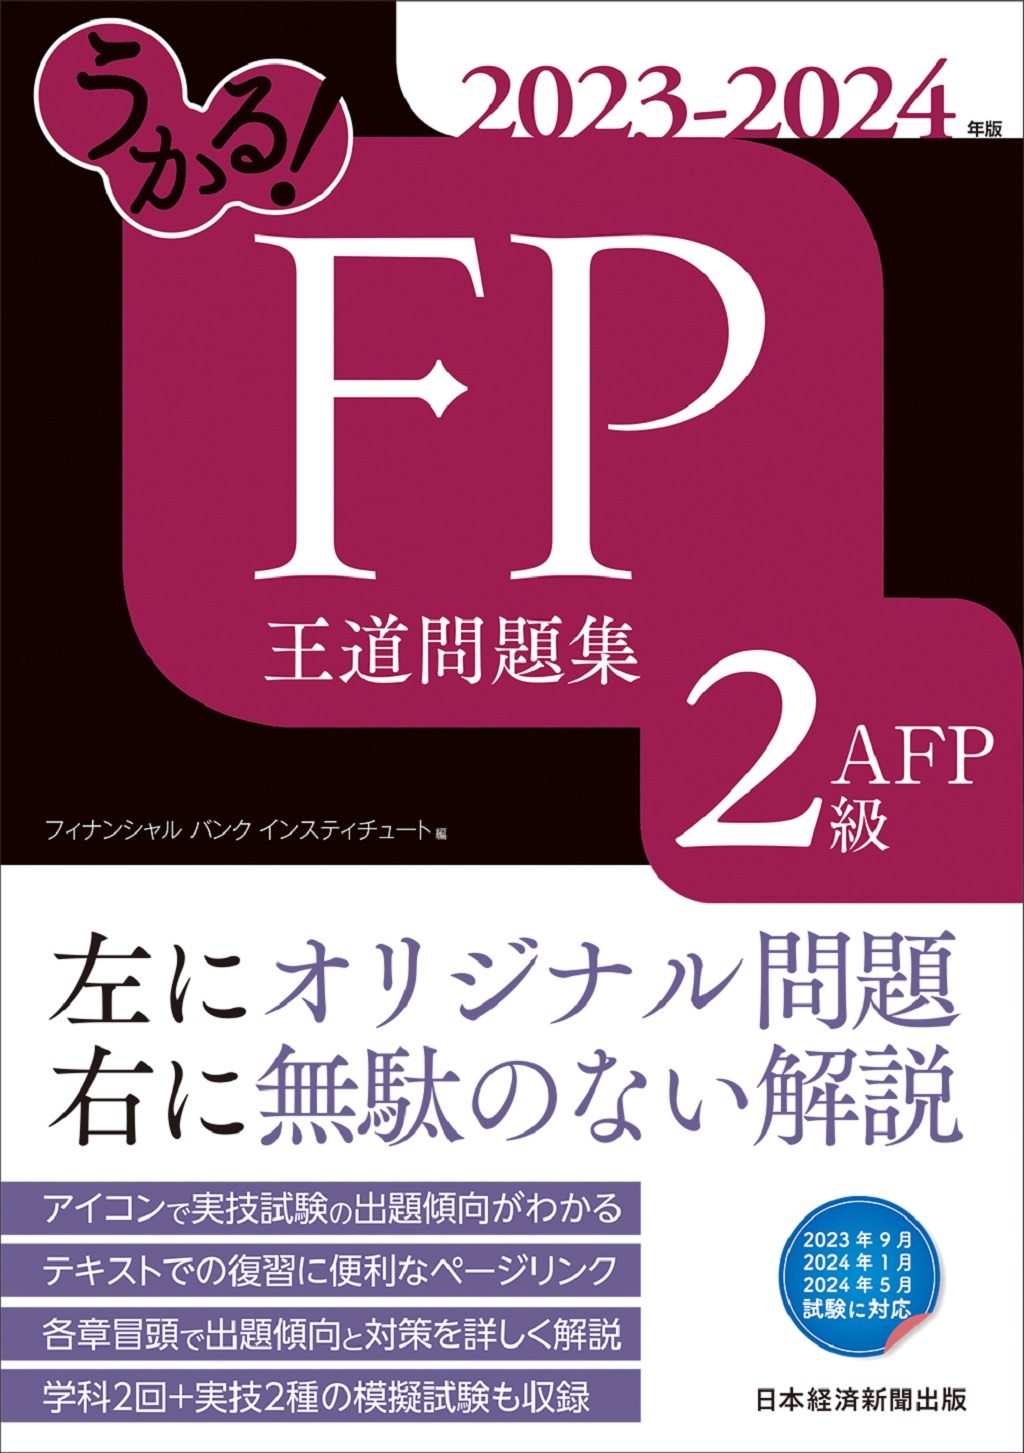 【大量】FP ファイナンシャルプランニング 2級 過去問 模擬試験 実技テキスト